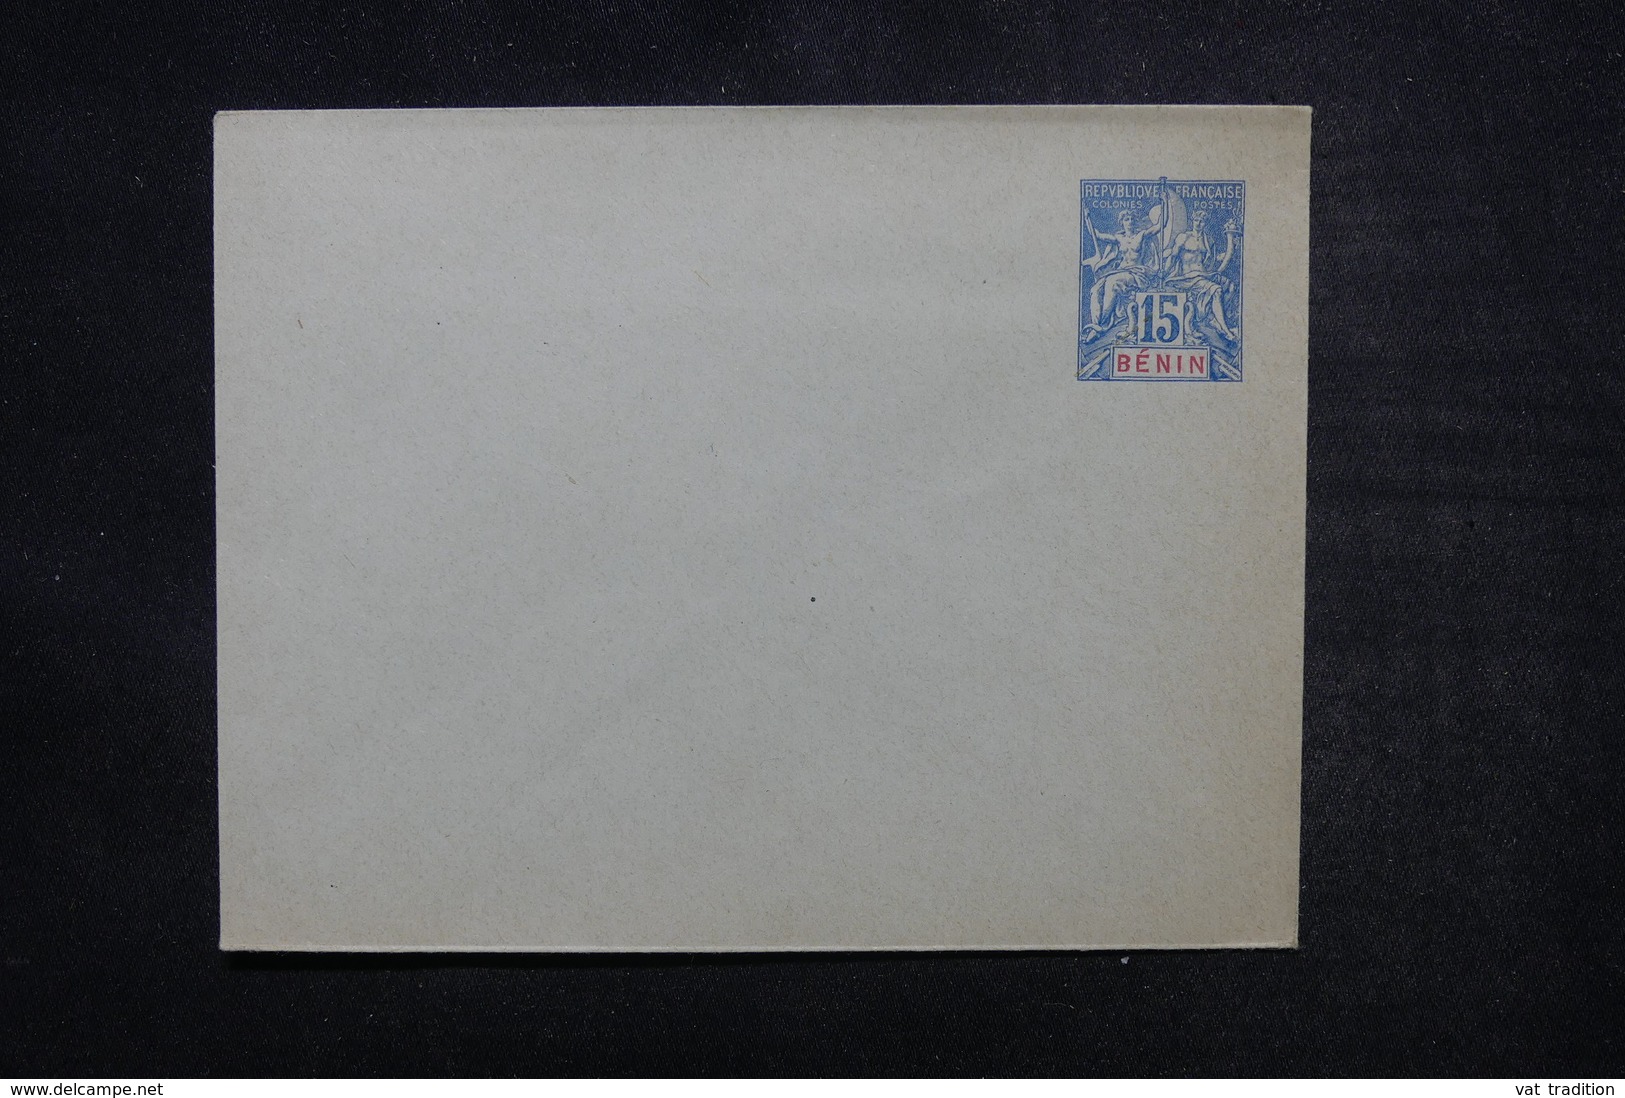 BÉNIN - Entier Postal Type Groupe - Non Circulé - L 54154 - Covers & Documents